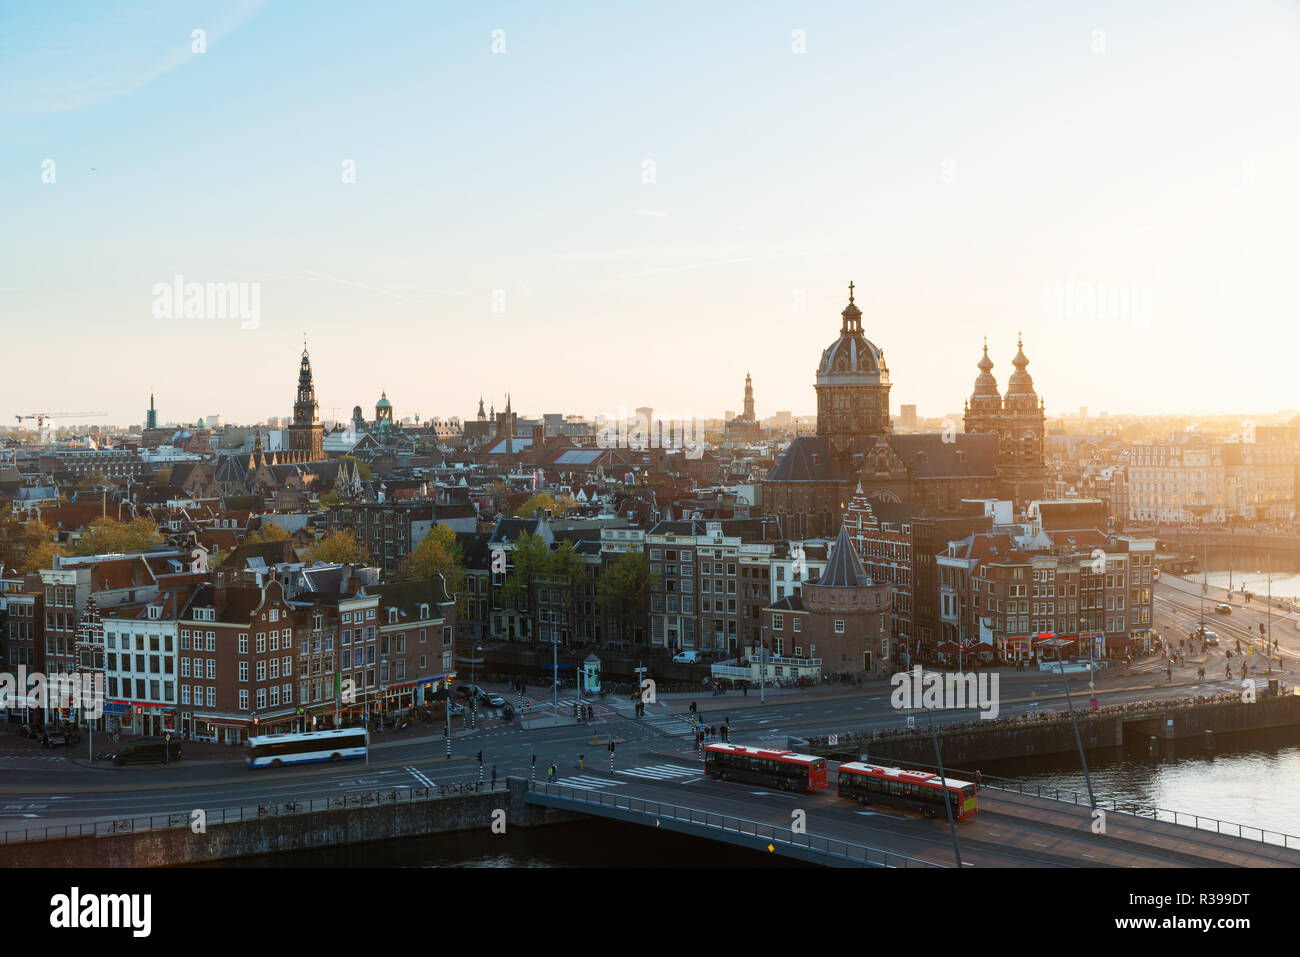 Amsterdam-Skyline im historischen Viertel in der Nacht, Amsterdam, Niederlande. Luftaufnahme von Amsterdam, Niederlande. Stockfoto